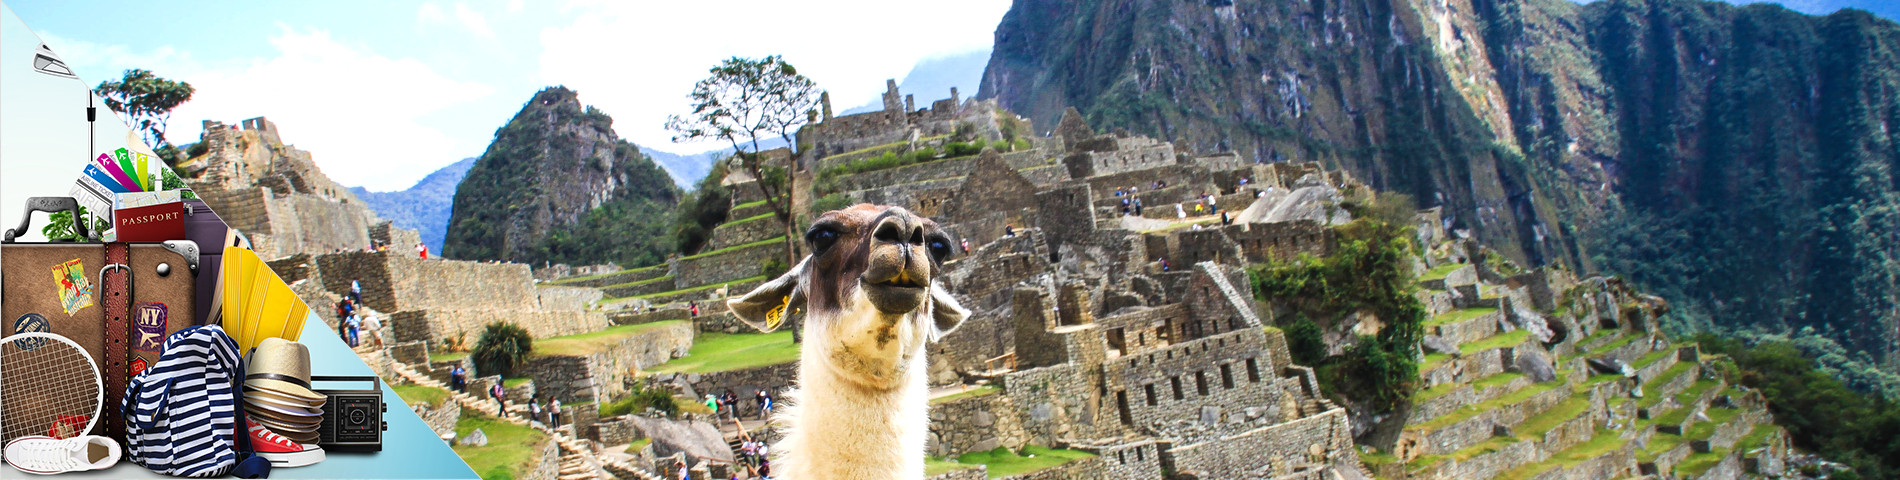 Peru - Espanhol para Turismo